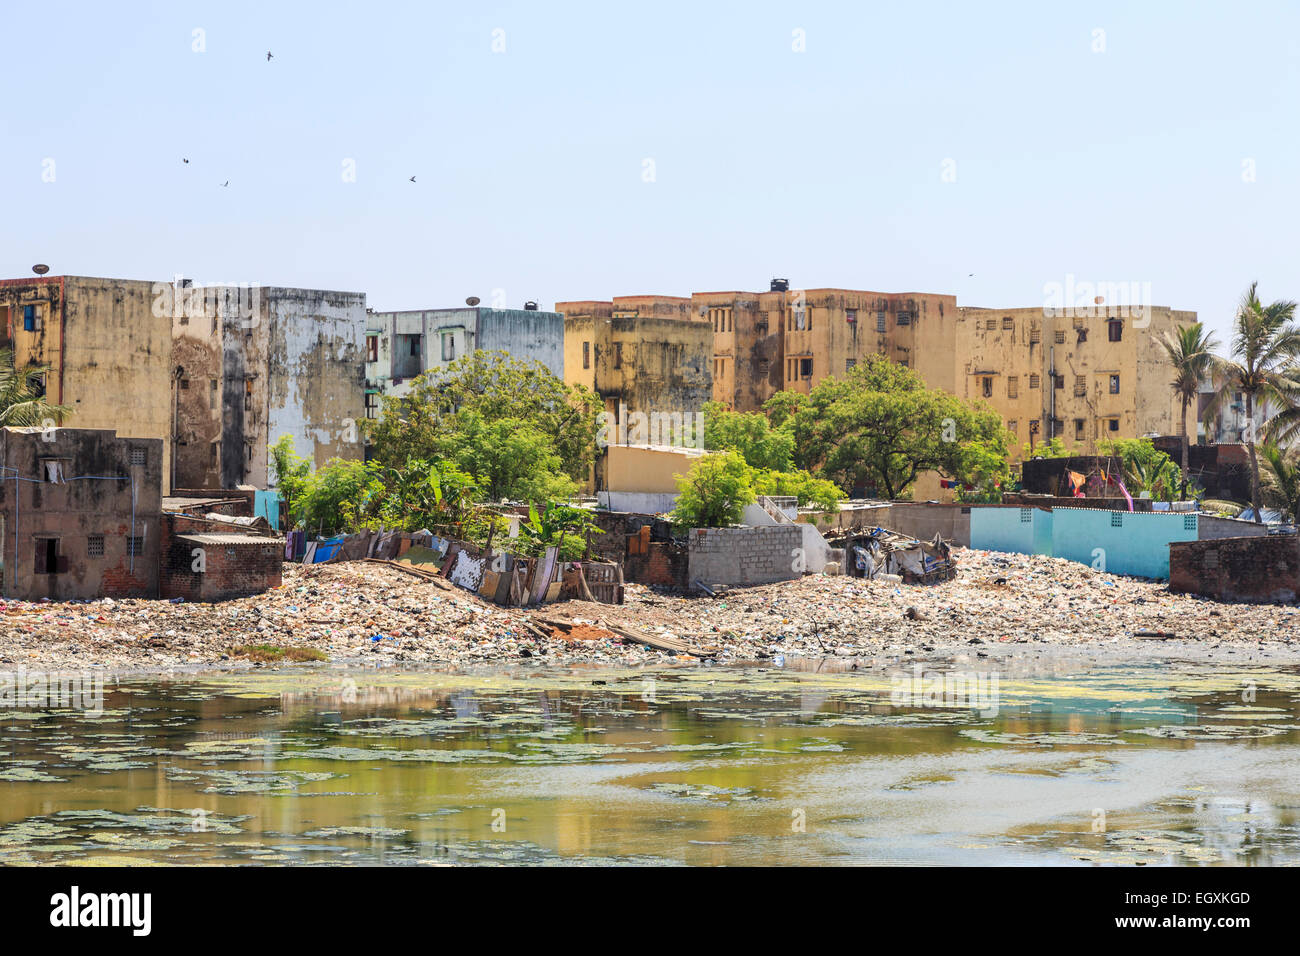 Armut in der Dritten Welt Lifestyle: Schlechte Slum mietskasernen am Ufer des verschmutzten Adyar Flussmündung in Chennai, Tamil Nadu, Südindien Stockfoto